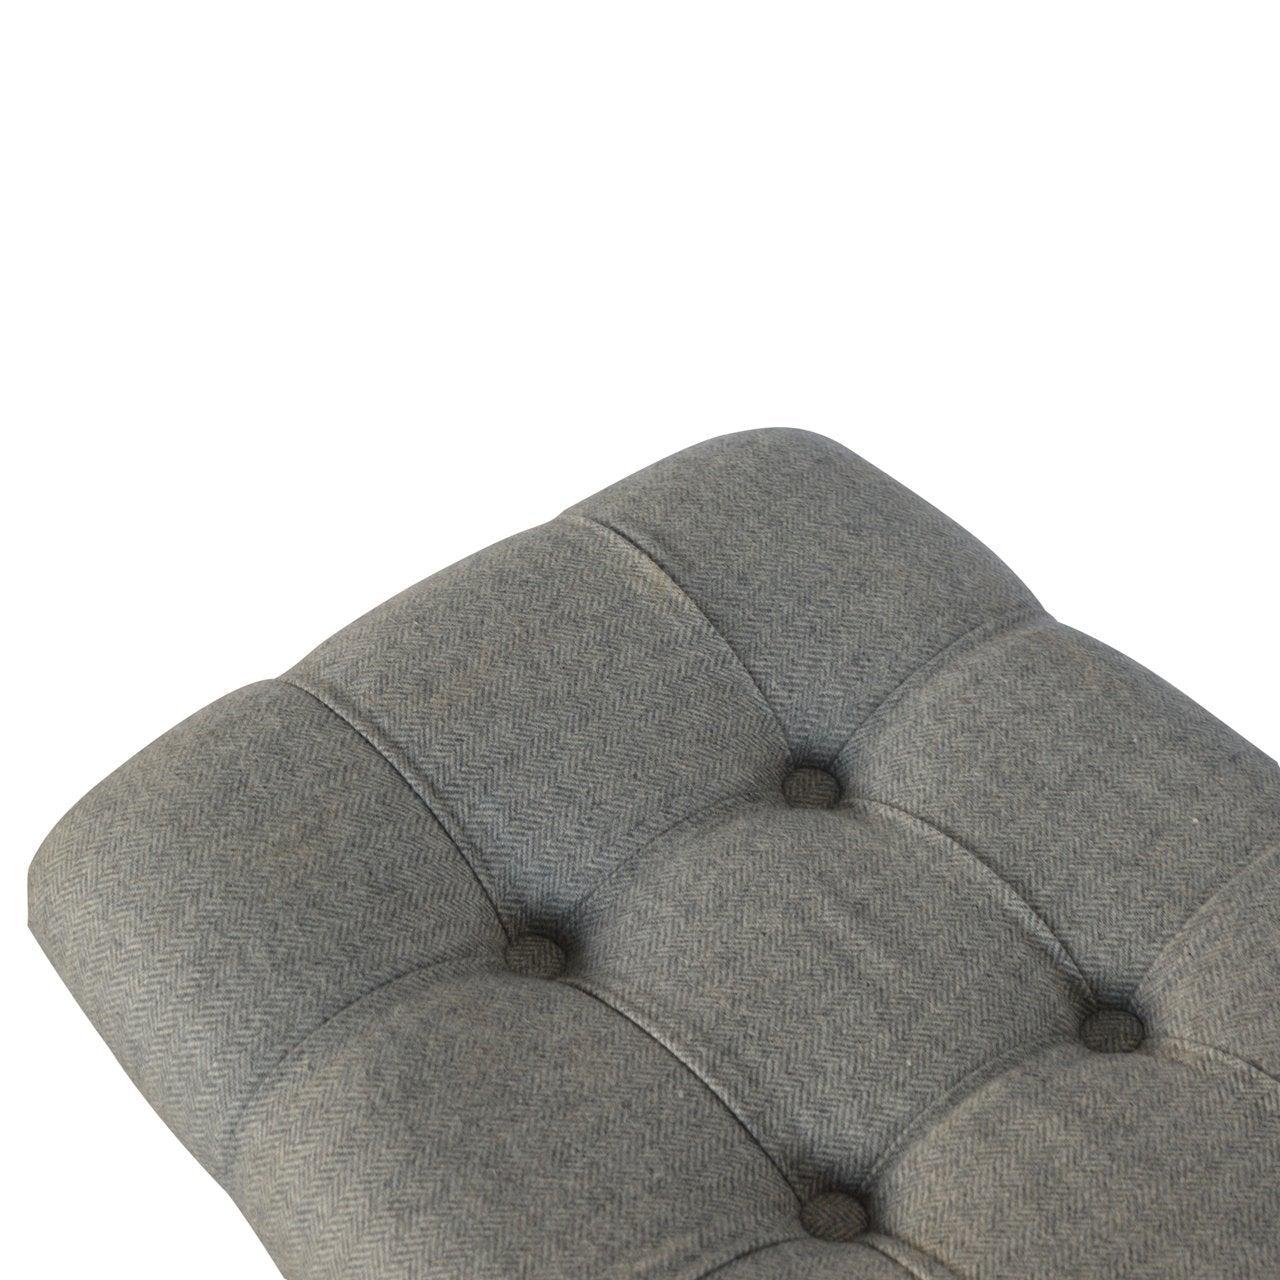 Curved grey tweed bench - crimblefest furniture - image 8